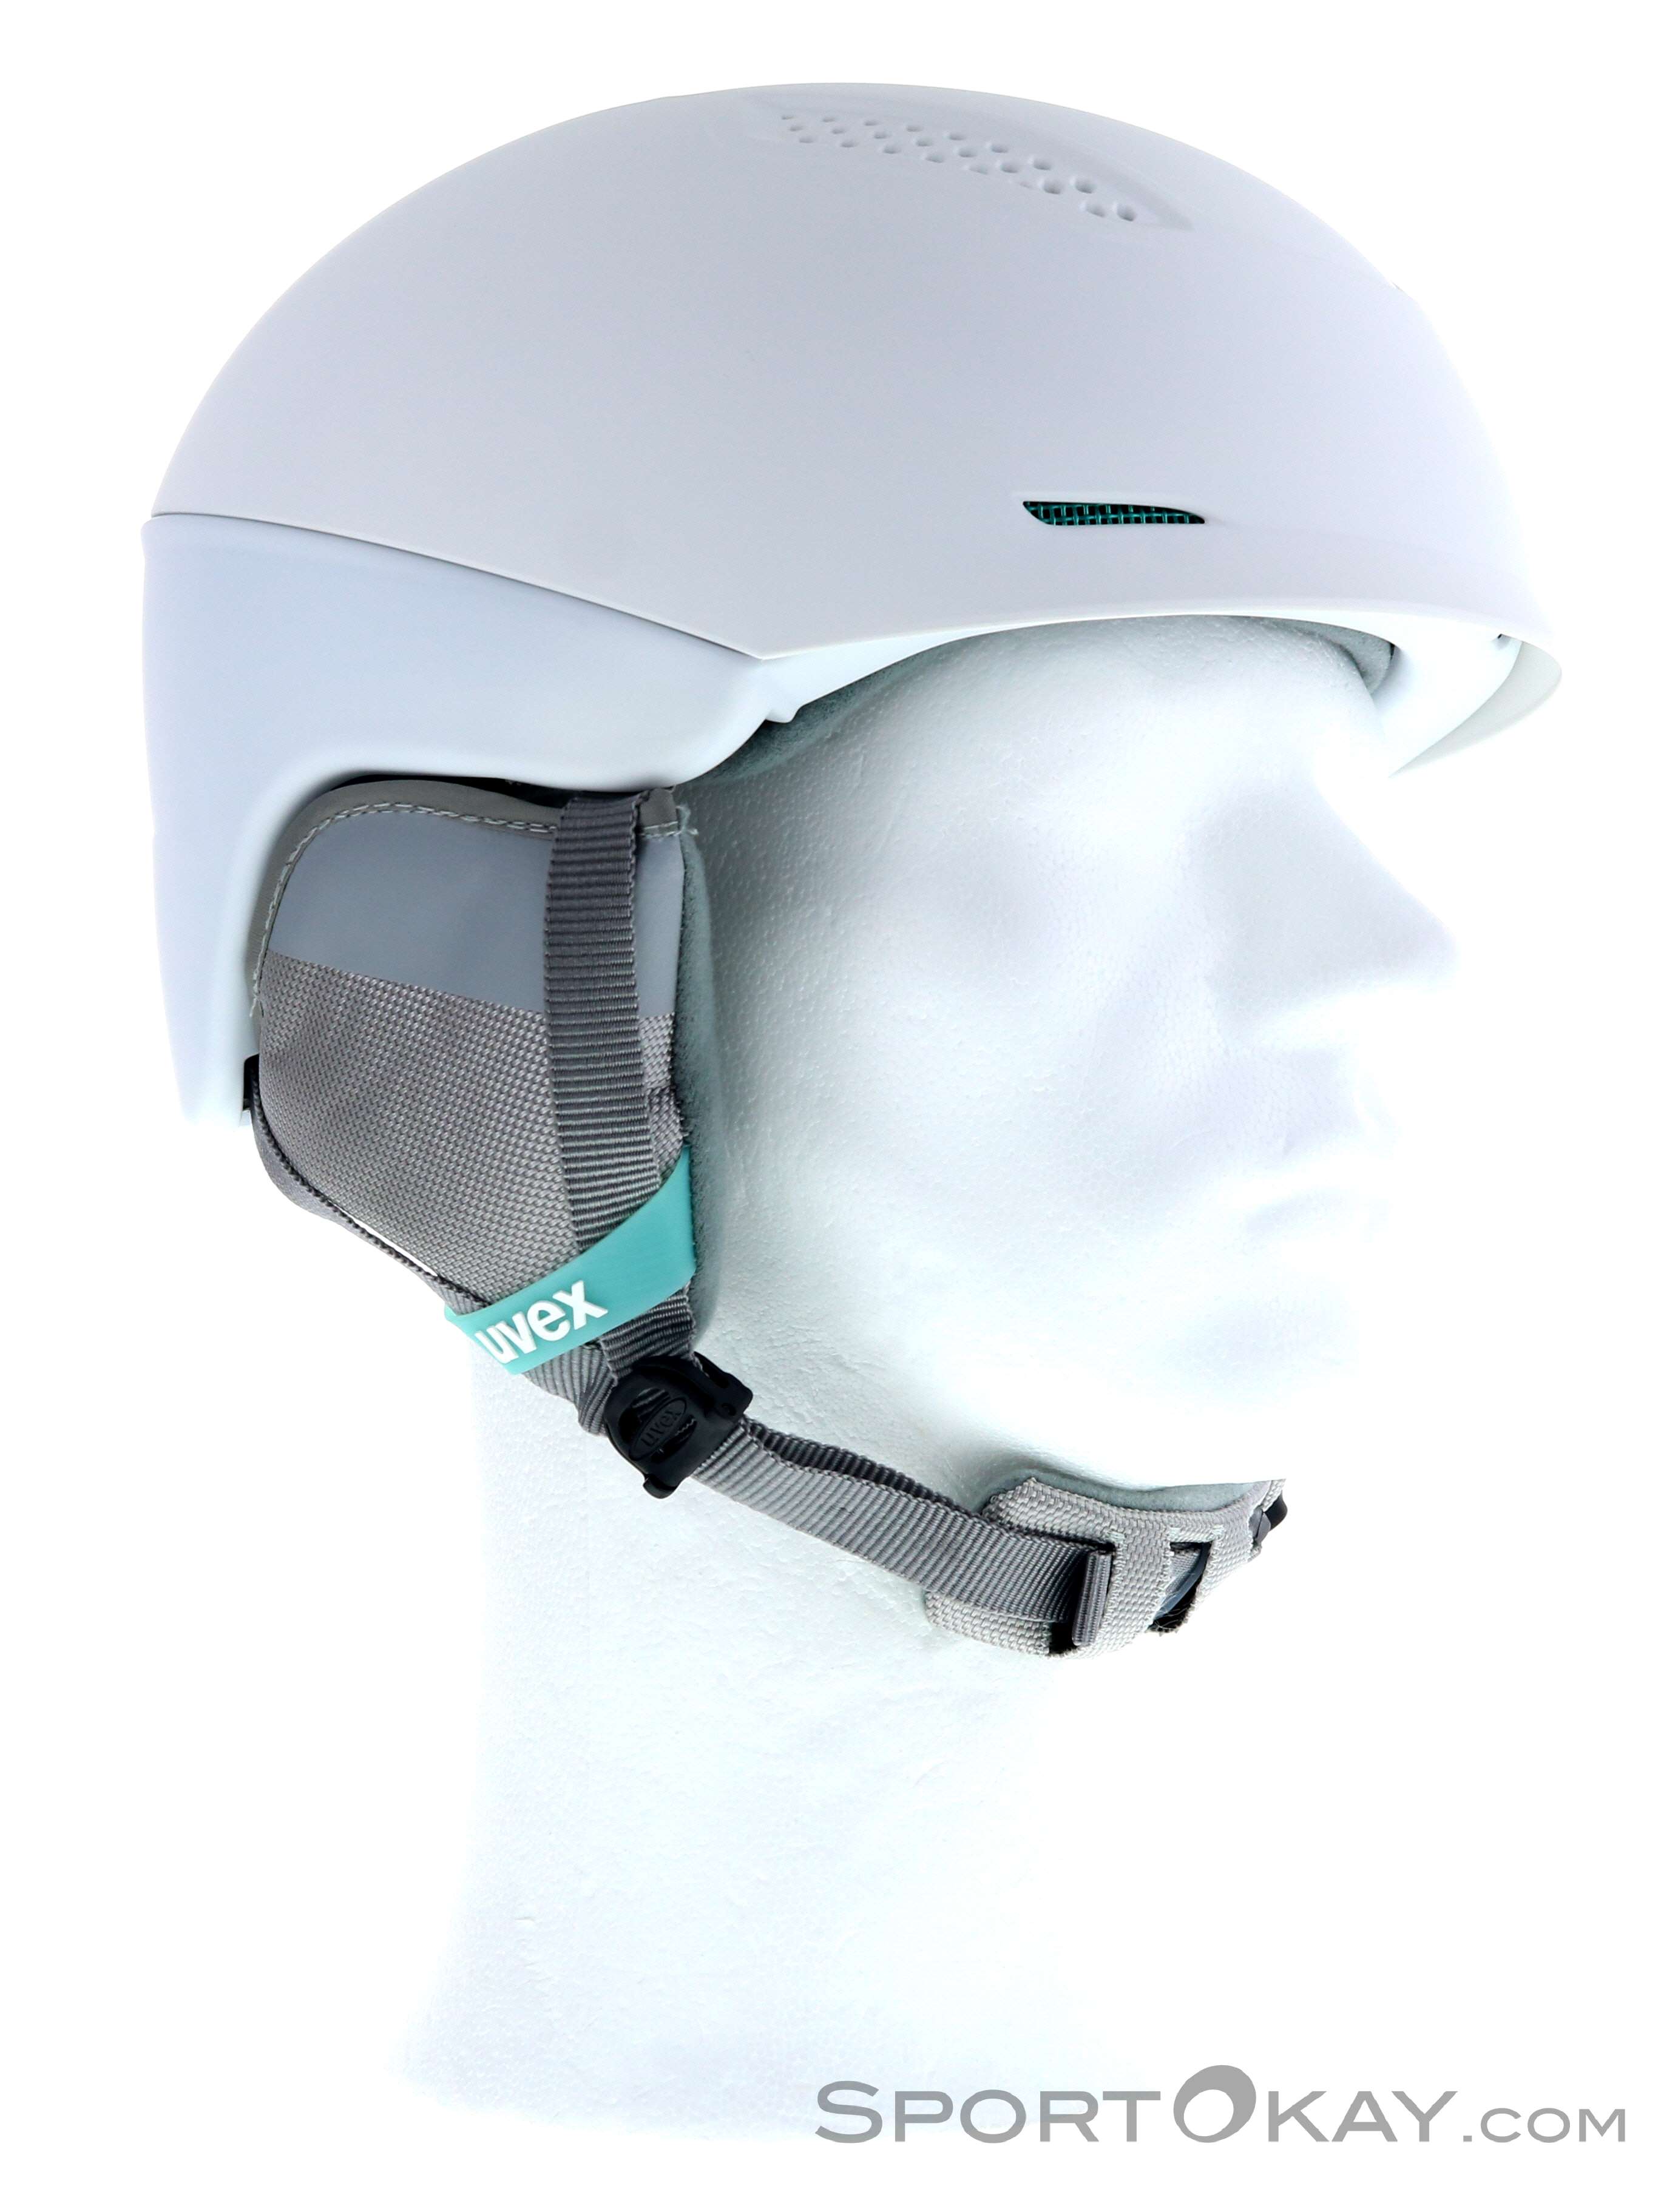 Uvex Ultra Ski Helmet - Ski Helmets - Ski Helmets & Accessory - Ski Freeride - All